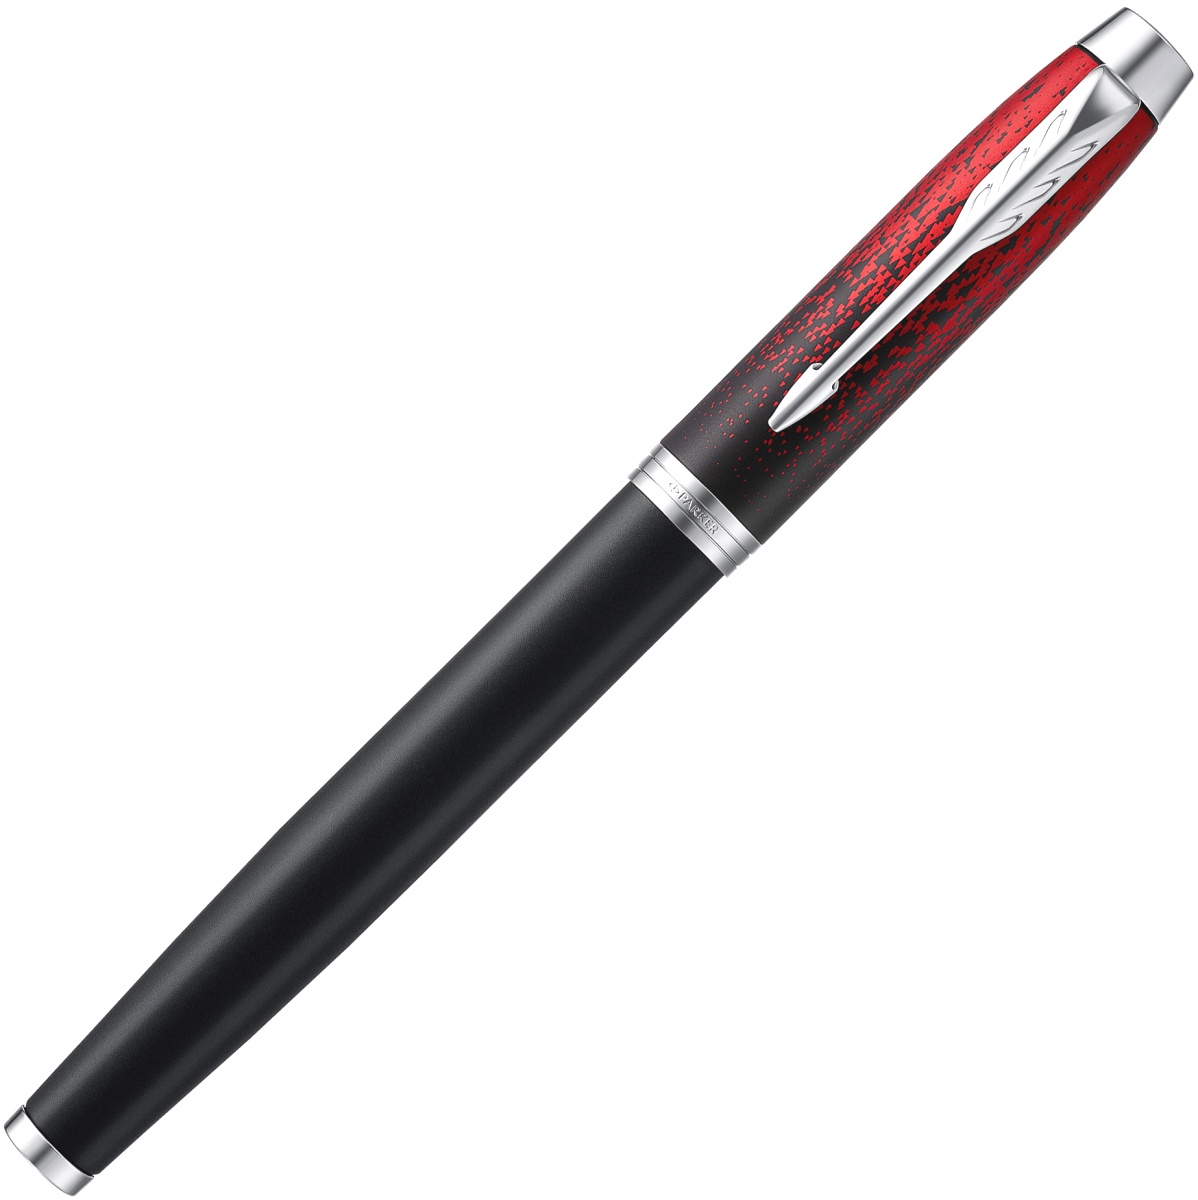  Ручка-роллер Parker IM Core 2019 SE T320, Red Ignite, фото 2